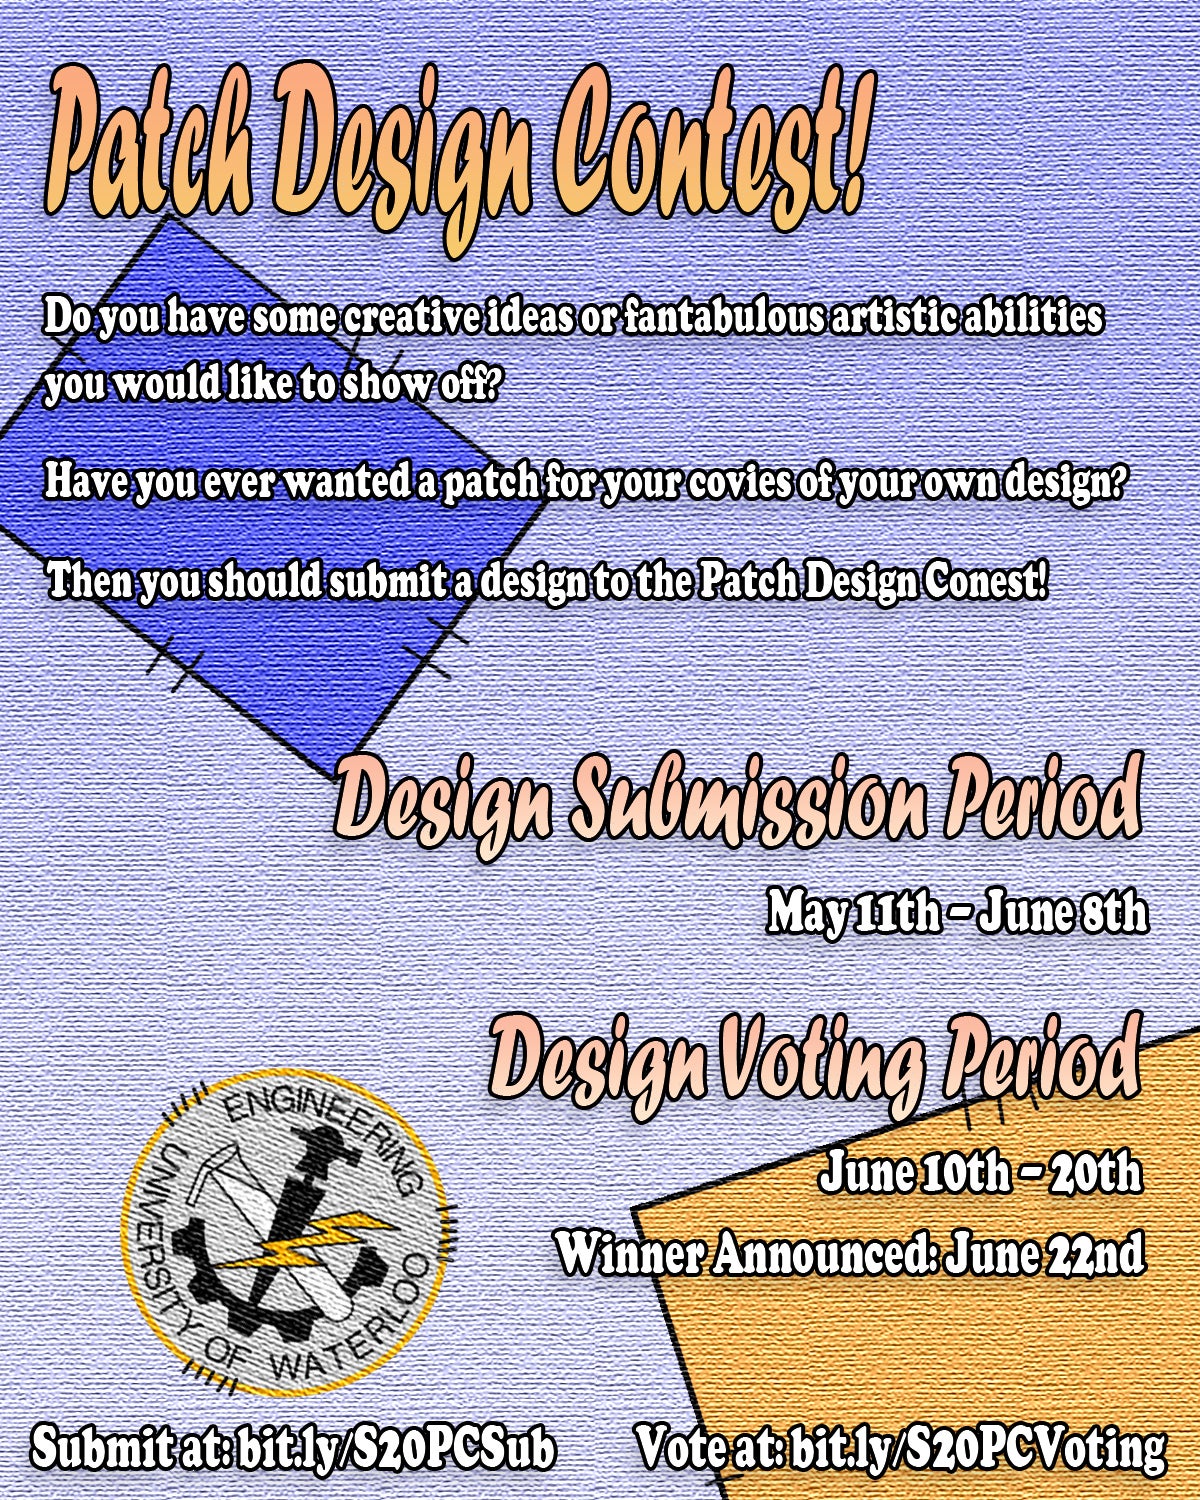 EnSoc Patch Design Contest